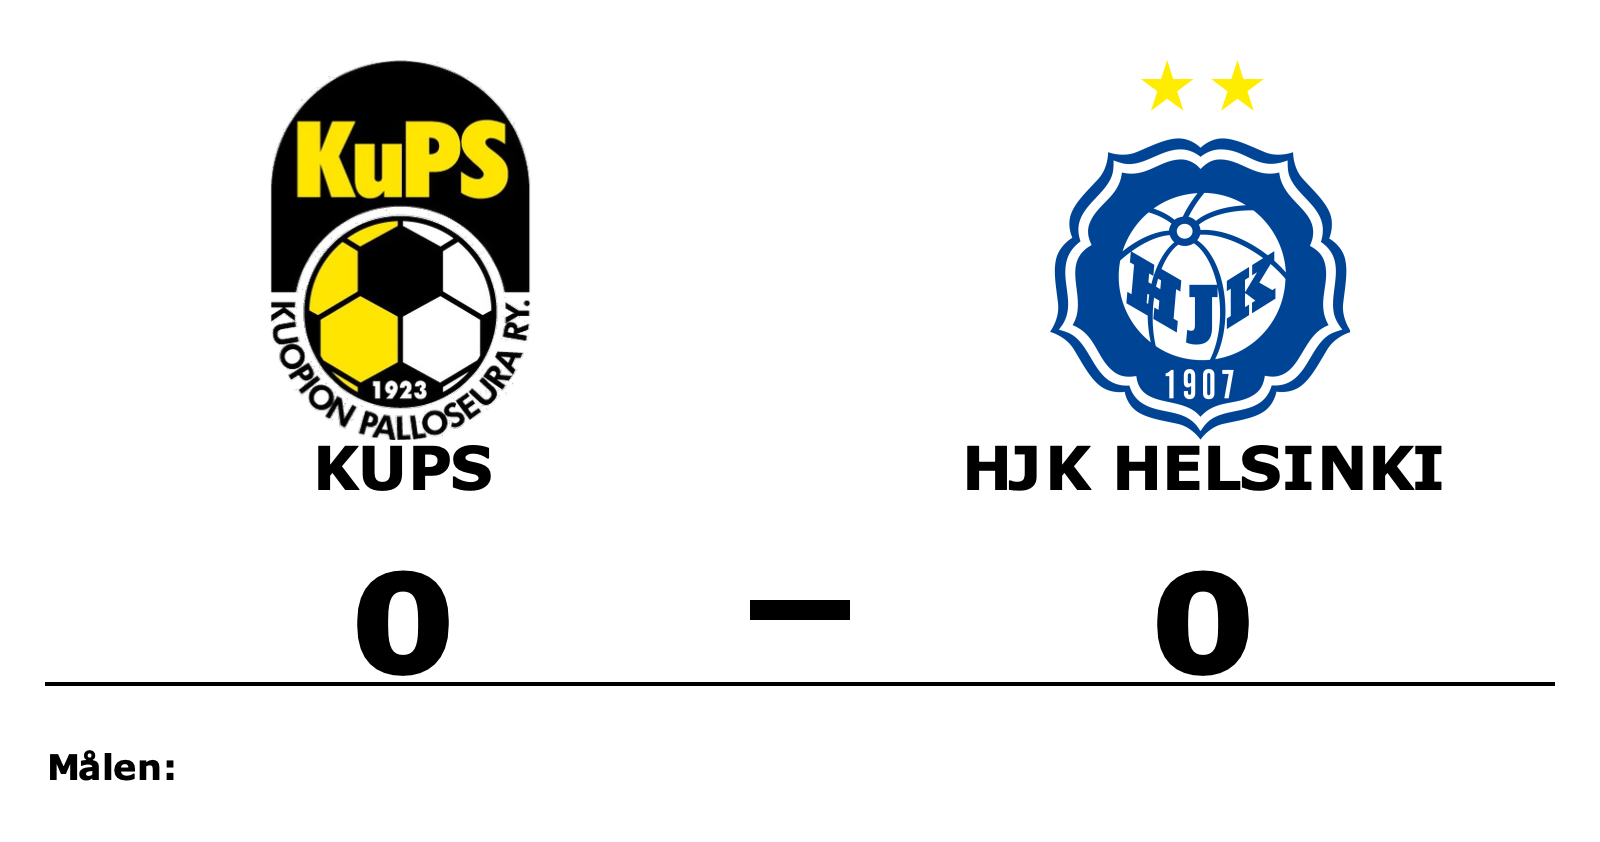 KuPS spelade lika mot HJK Helsinki